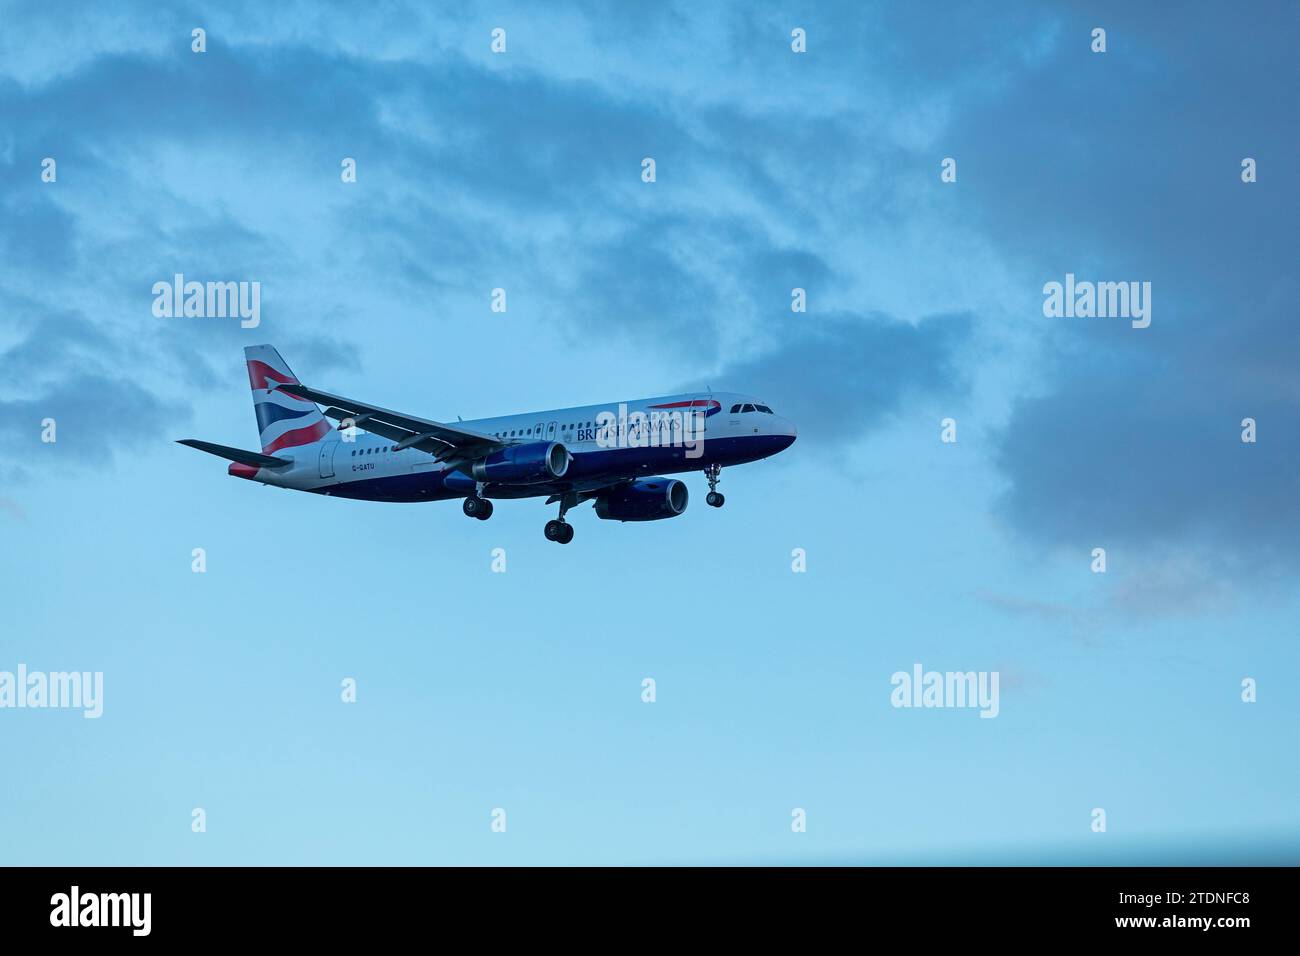 Avion British Airways approchant pour un atterrissage, aéroport de Gatwick, Londres, Angleterre, Grande-Bretagne Banque D'Images